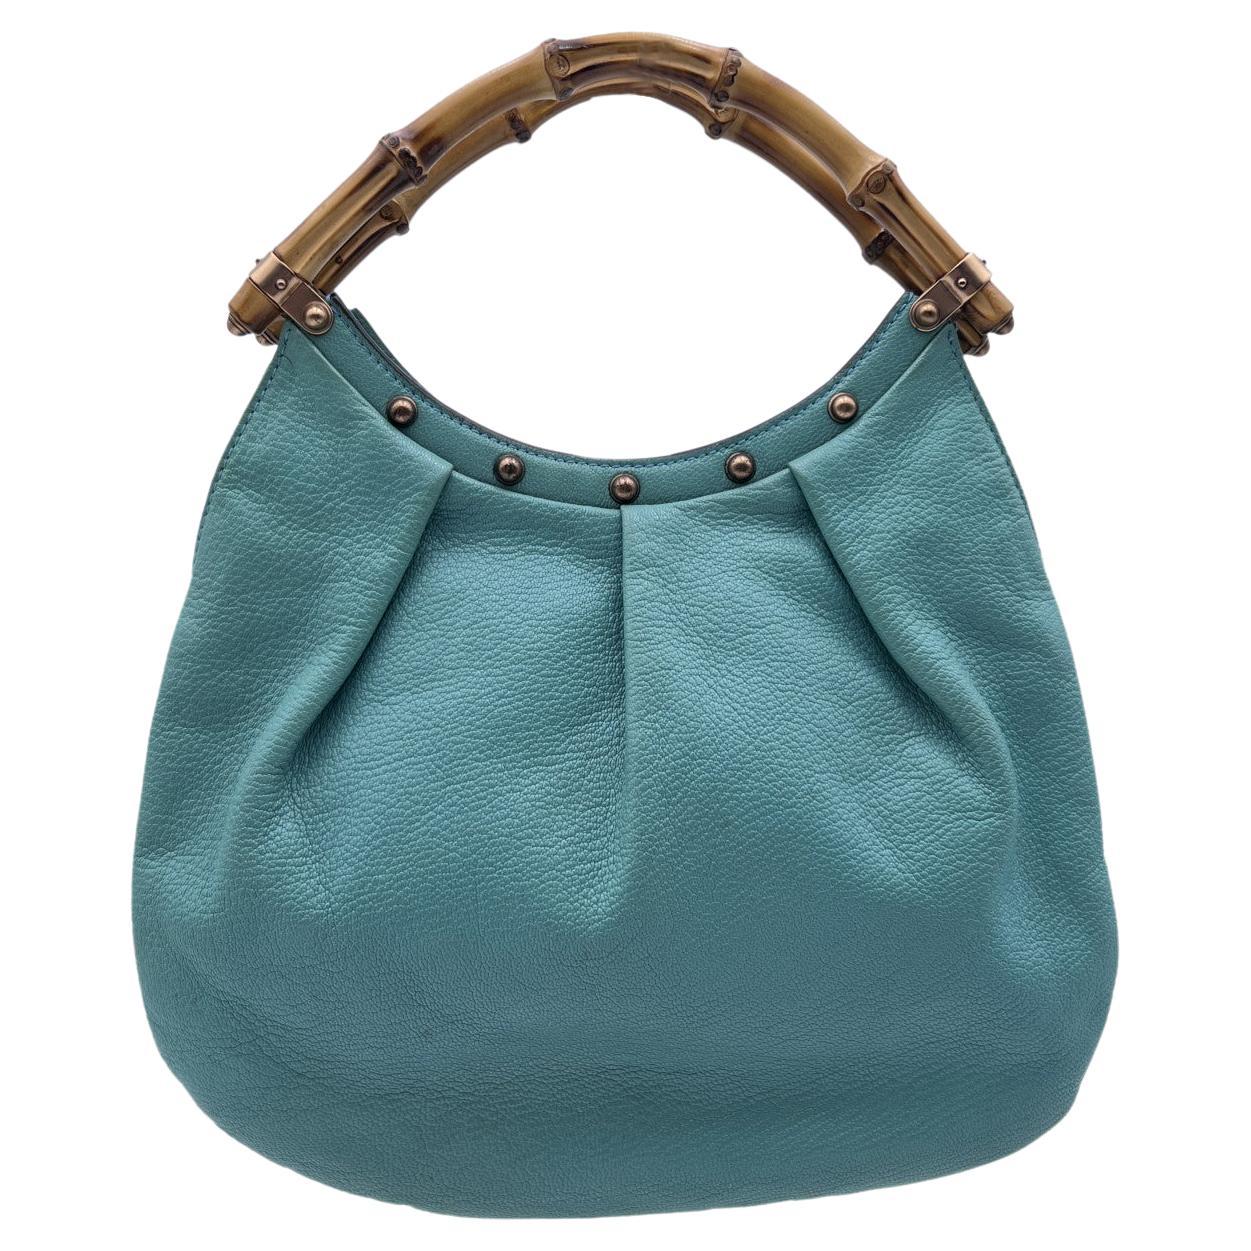 Gucci Turquoise Leather Bamboo Studded Handbag Hobo Bag